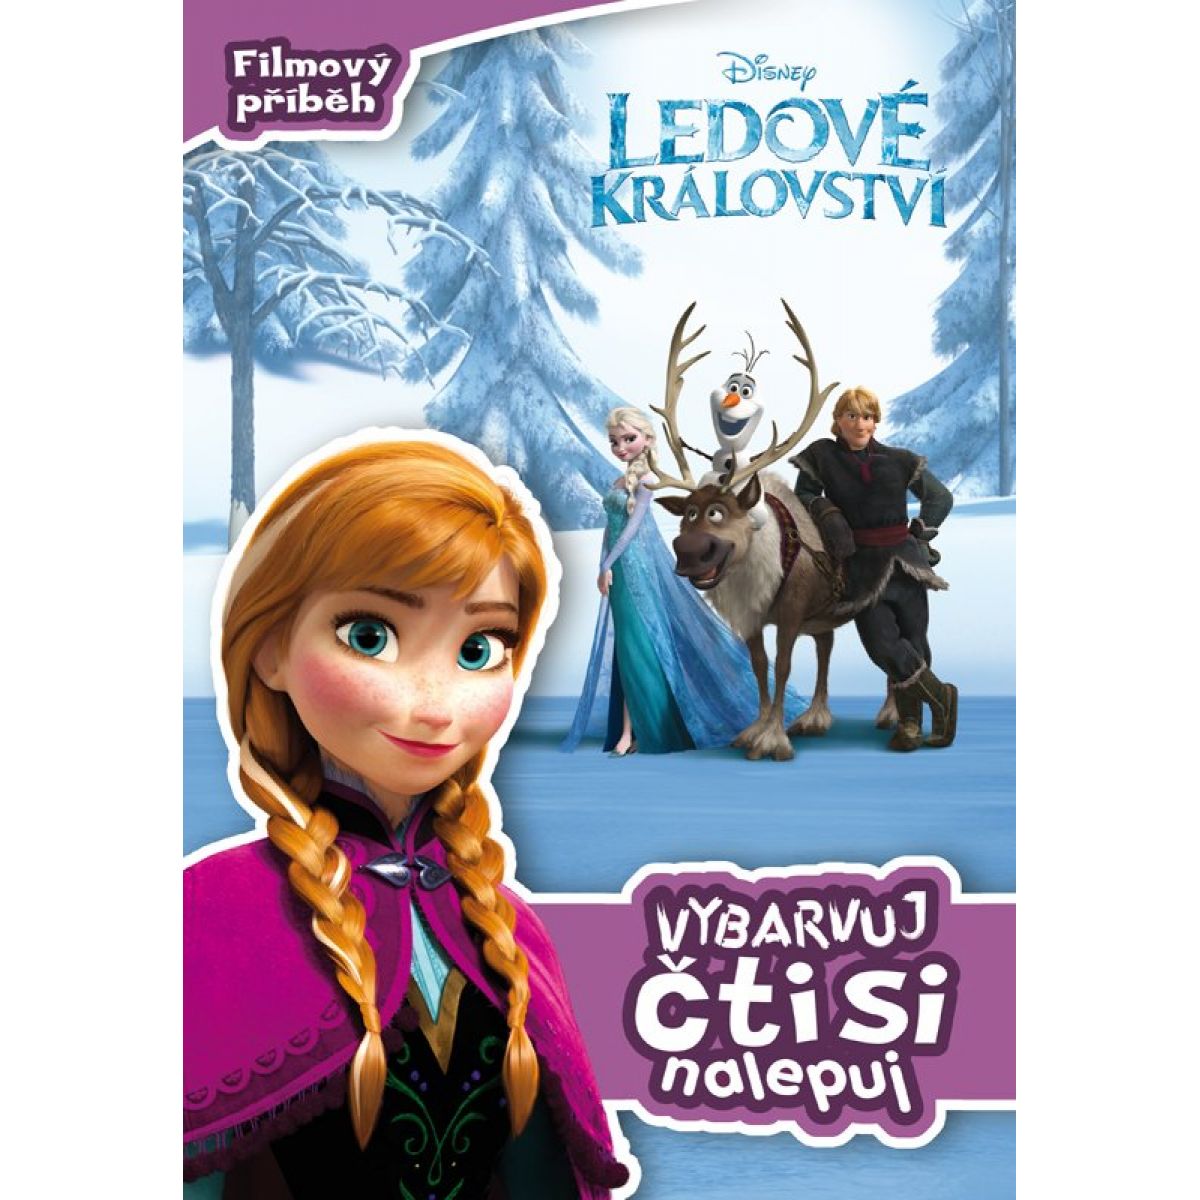 Ledové království Filmový příběh Vybarvuj, čti si, nalepuj! - Walt Disney